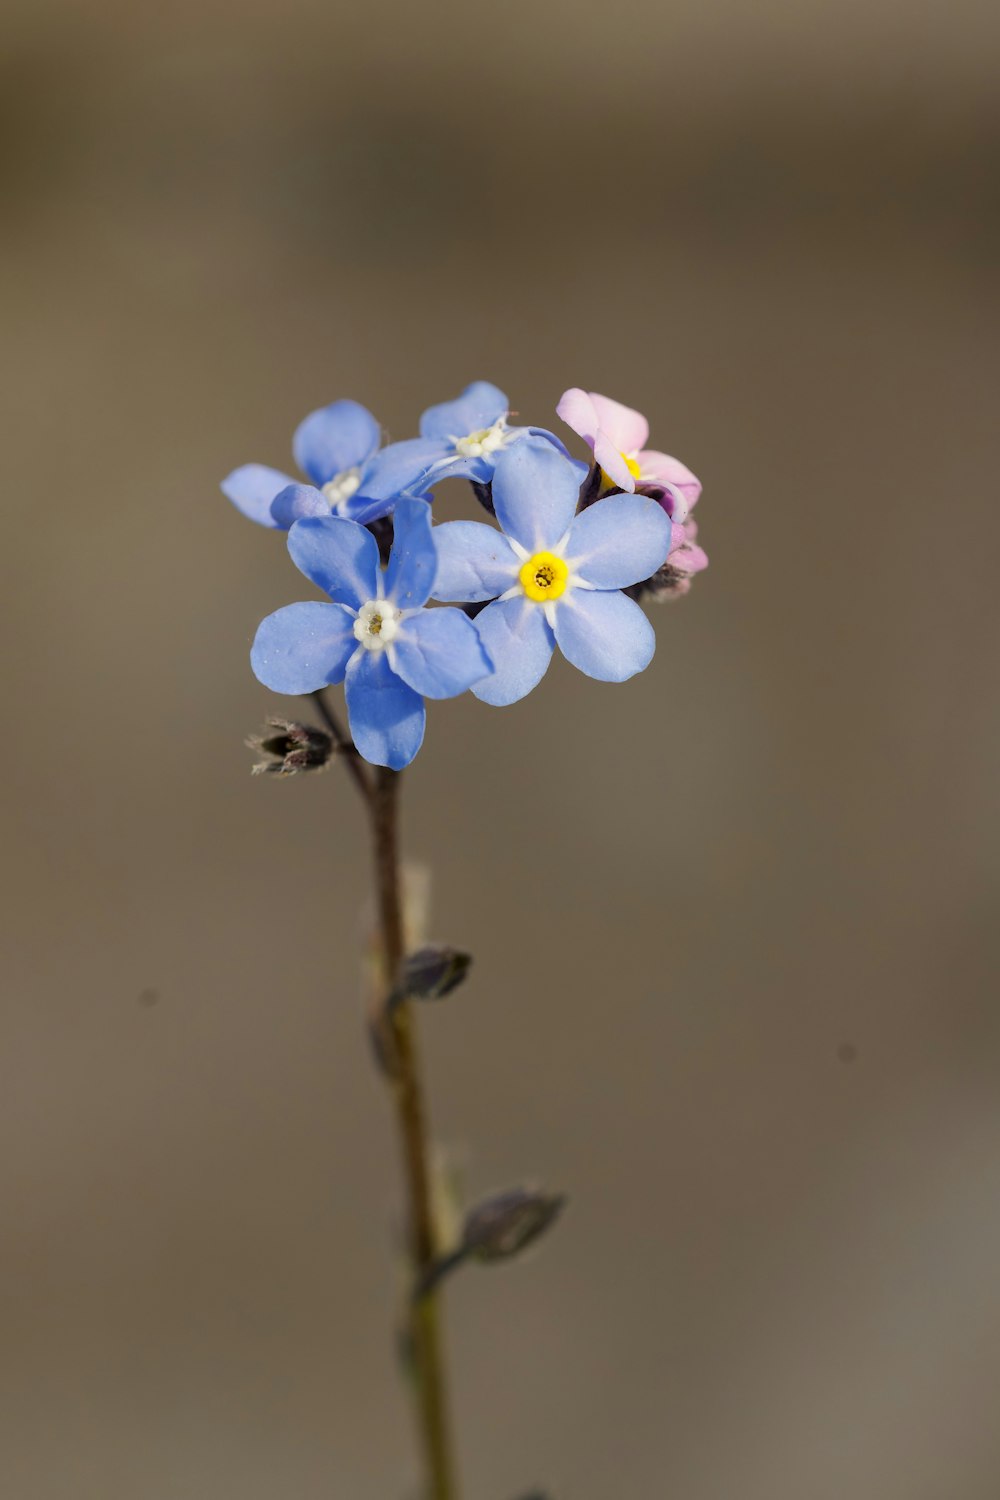 黄色とピンクの花びらを持つ小さな青い花